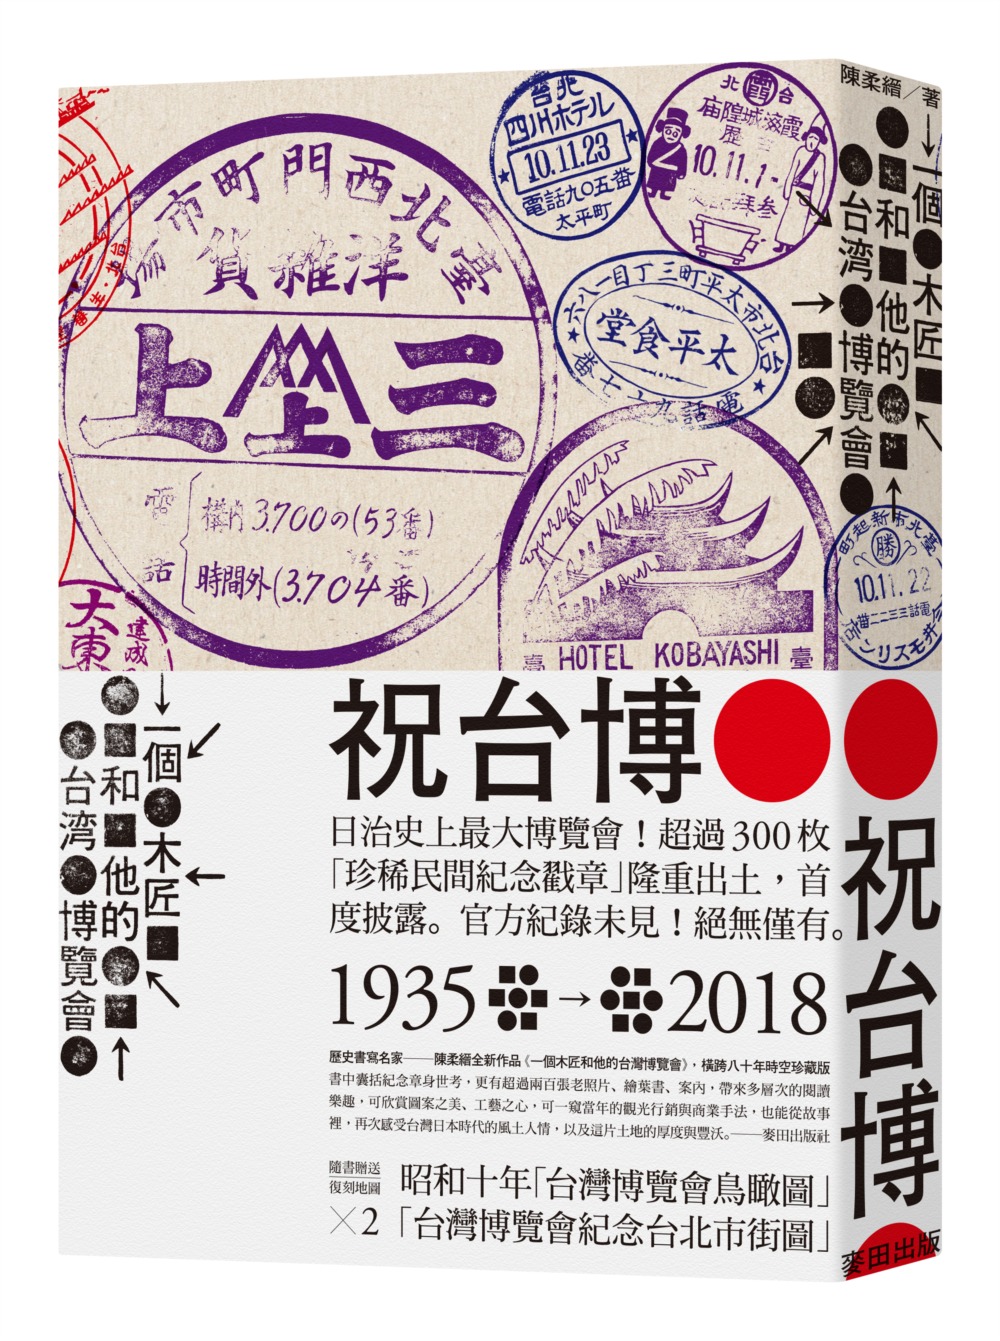 一個木匠和他的台灣博覽會（極致珍藏版：隨書附1935年『台灣博覽會紀念台北市街圖』、『台灣博覽會鳥瞰圖』復刻版古地圖，共兩張）※初版紀念簽名（限定600部）